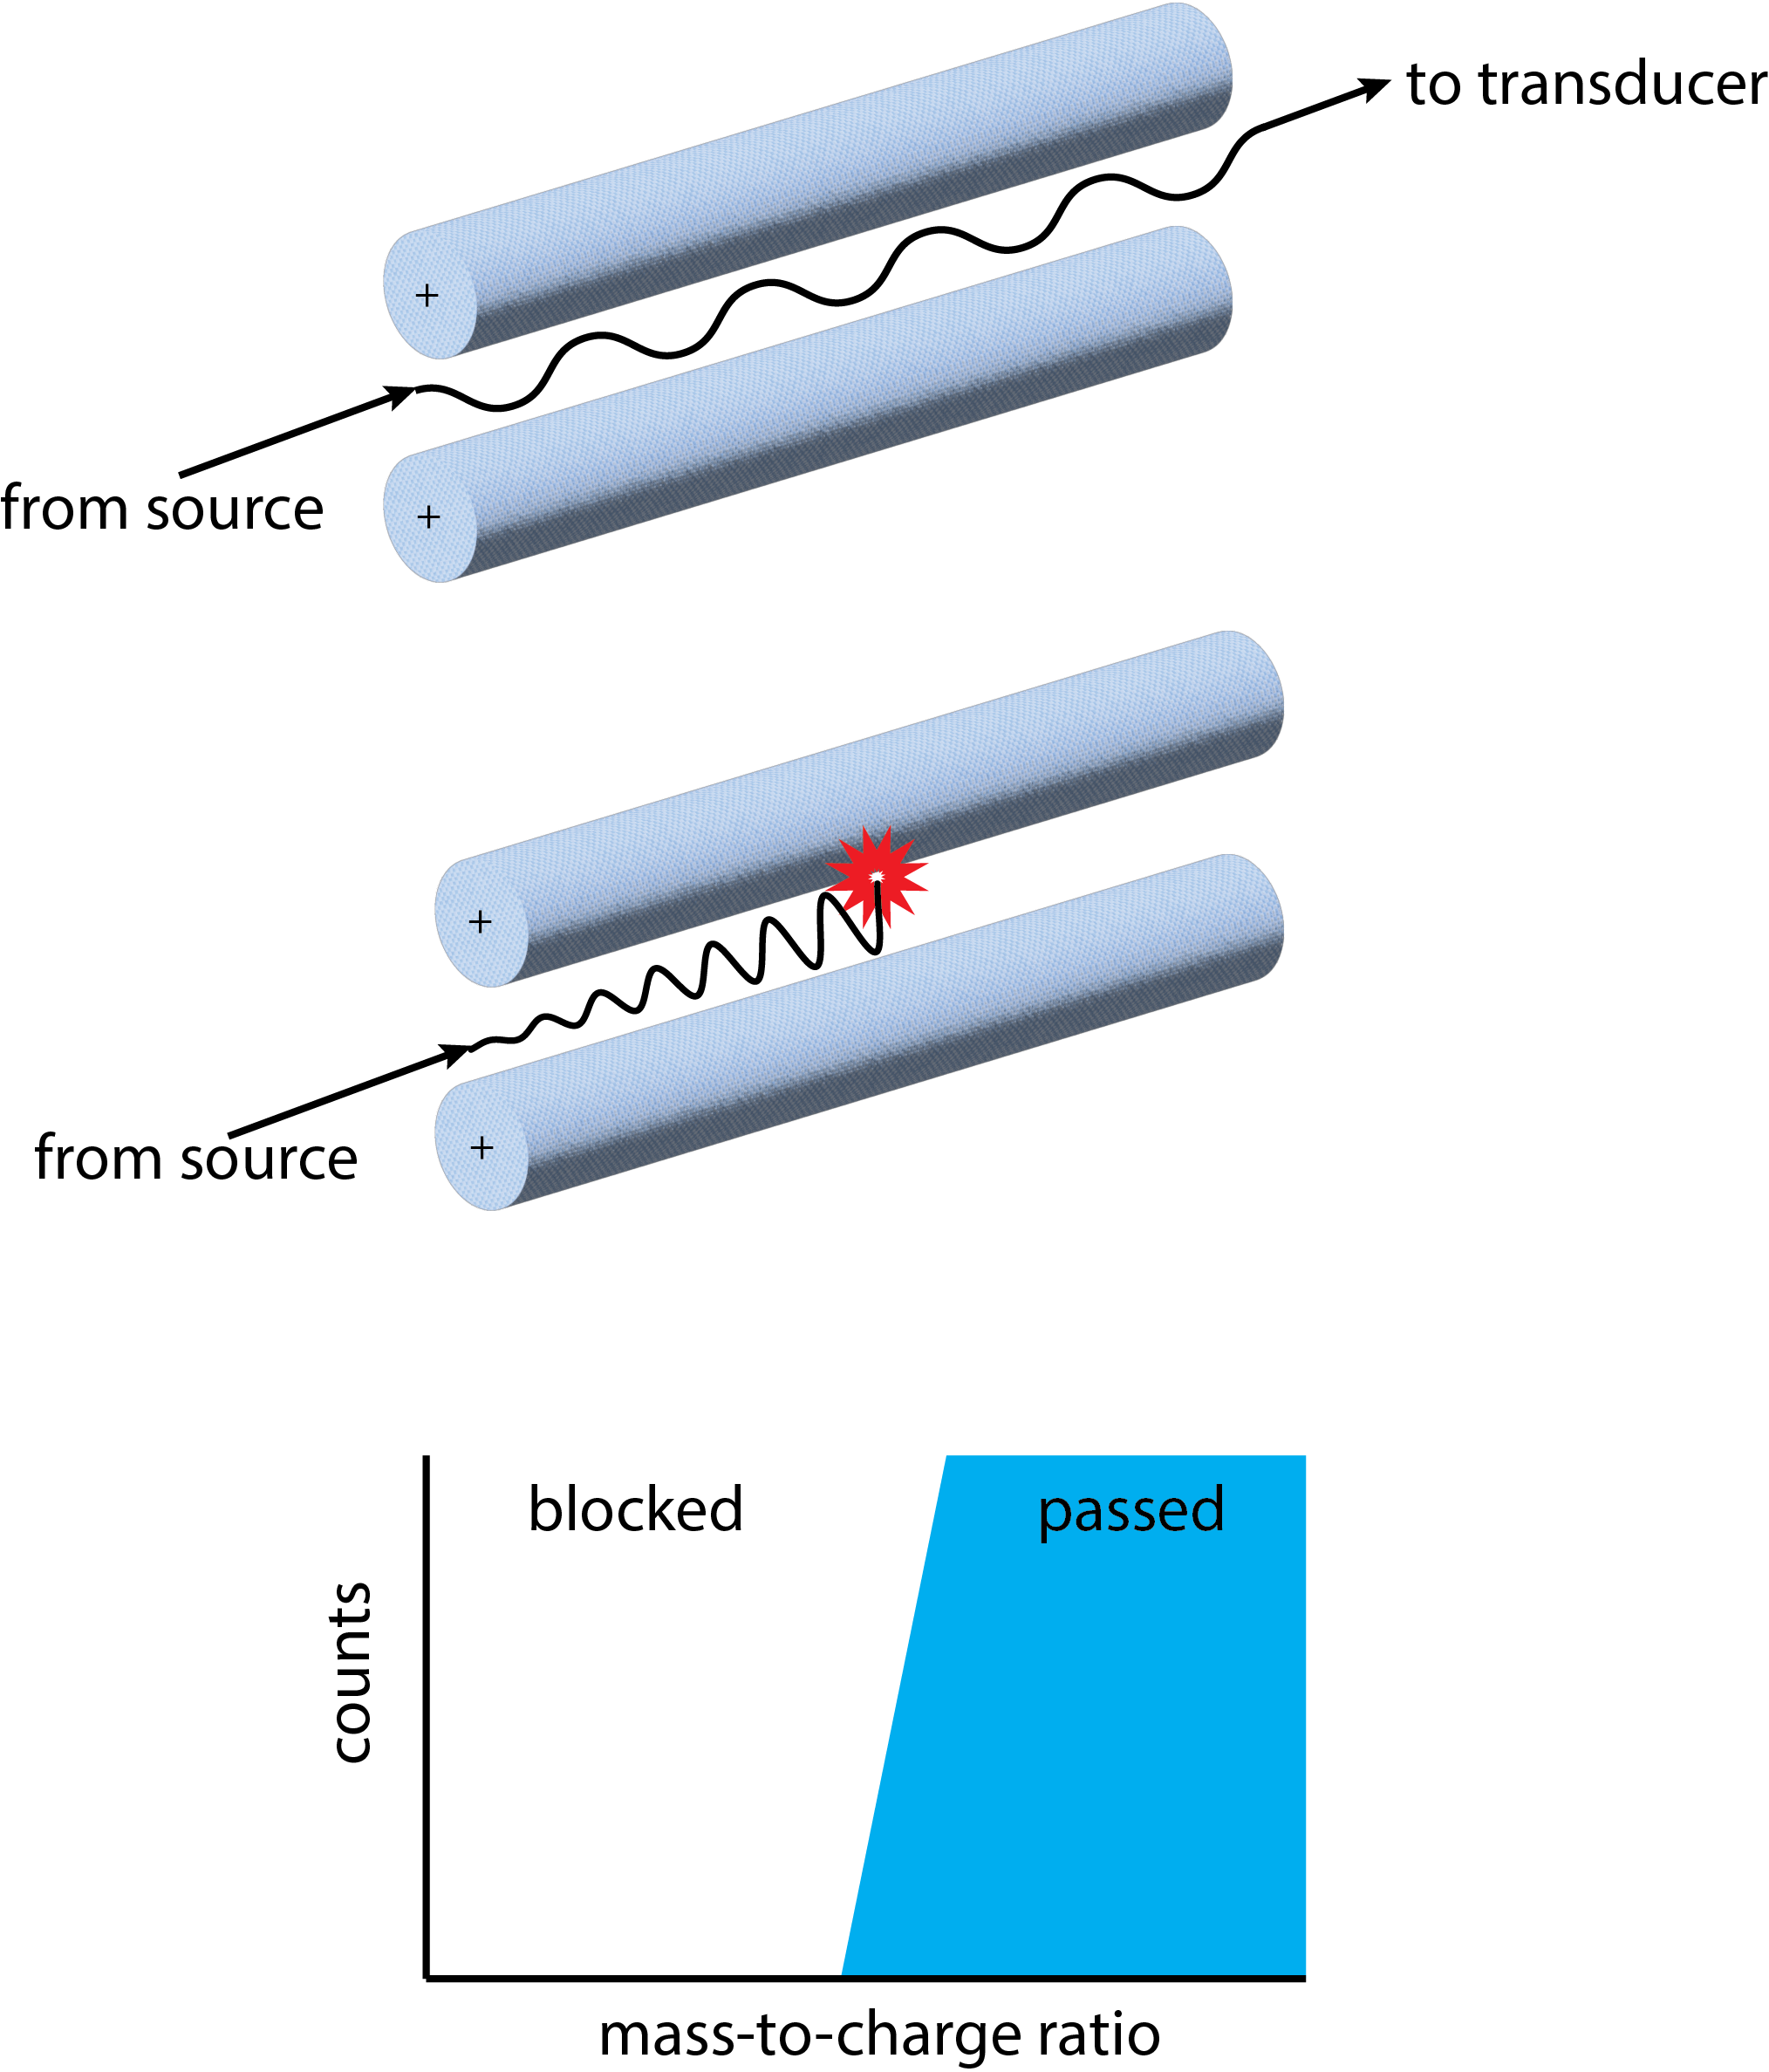 Ilustración de cómo un analizador de masas cuadrupolo logra la separación de iones por su relación masa/carga. Consulte el texto para obtener más detalles.